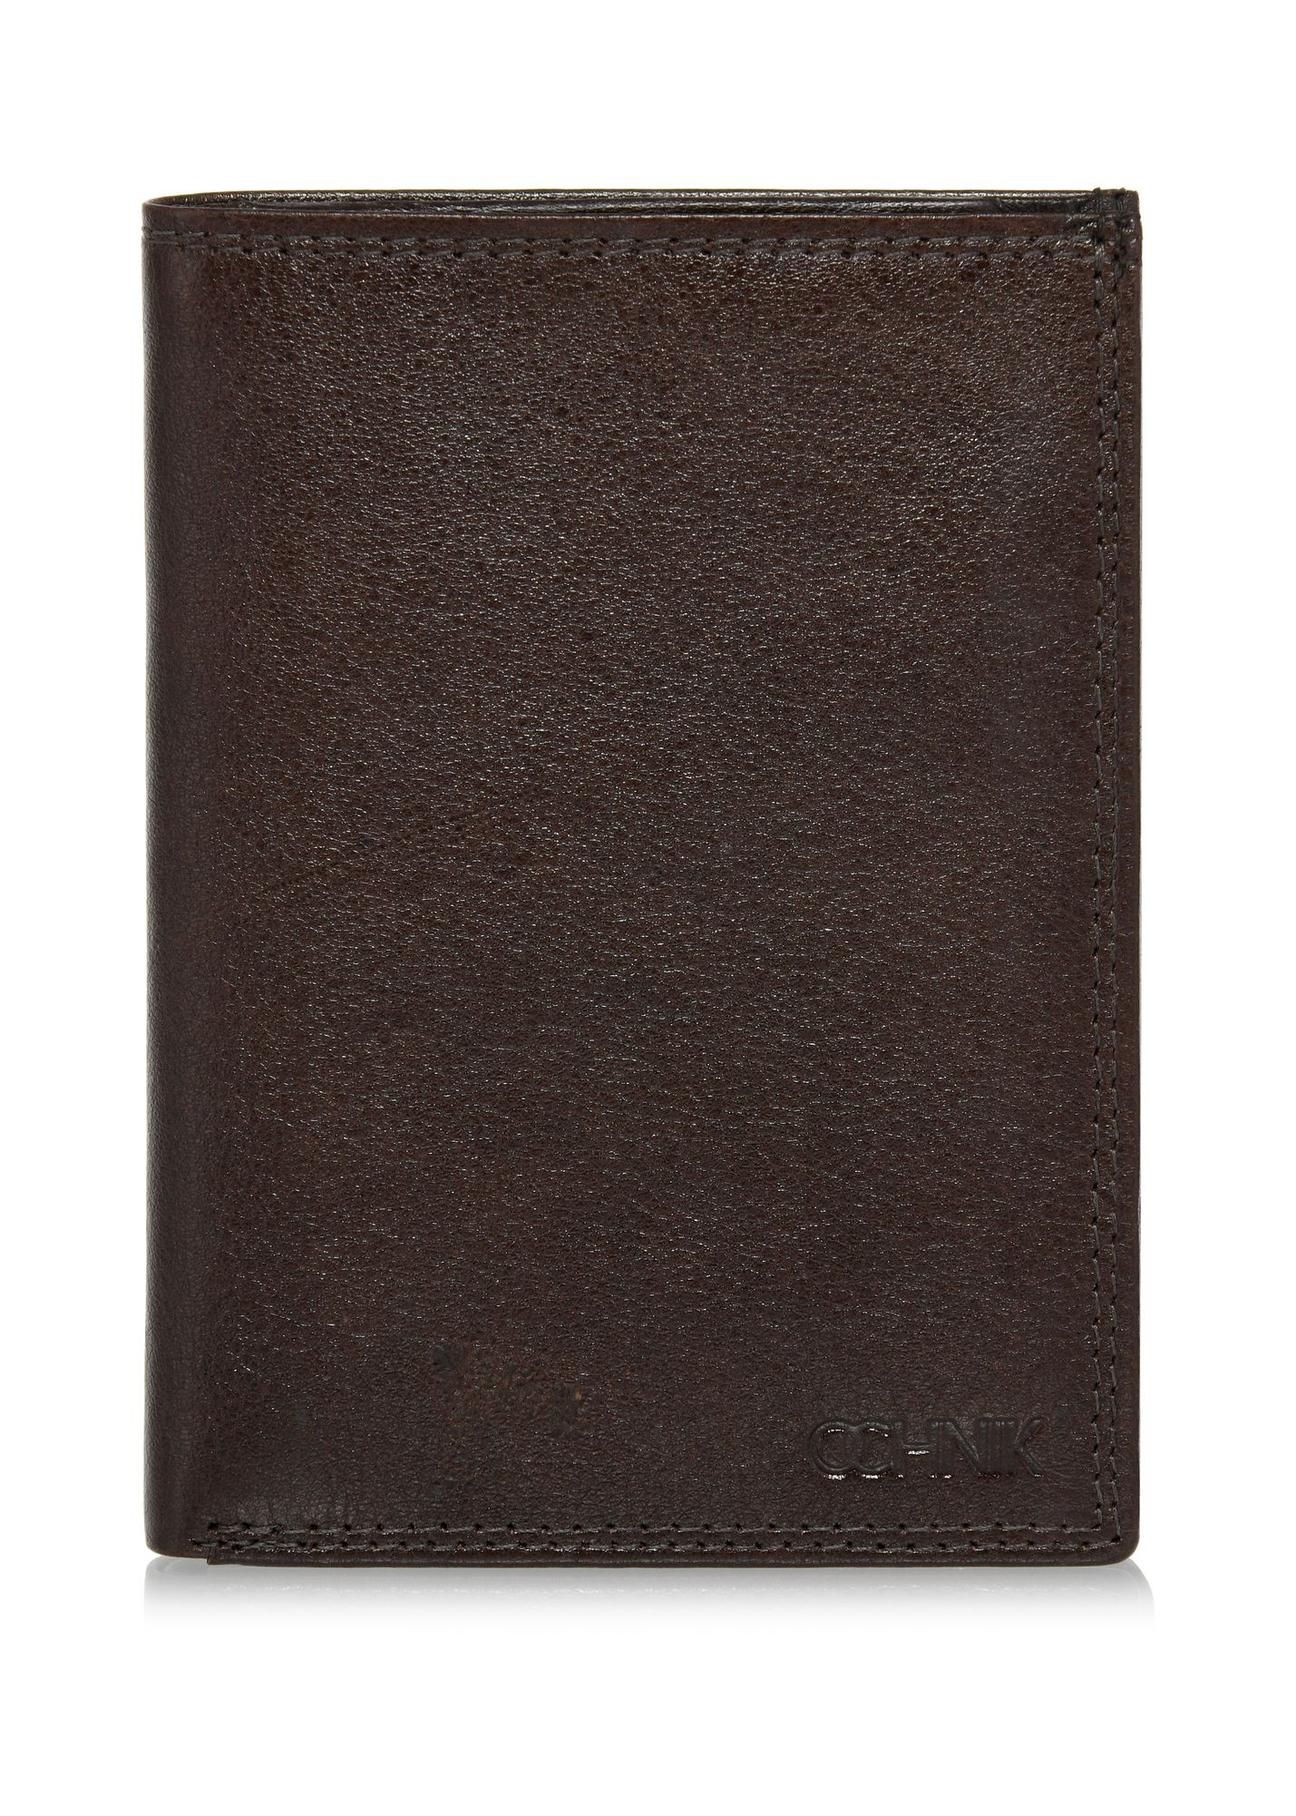 Brązowy skórzany niezapinany portfel męski PORMS-0550-89(W24)